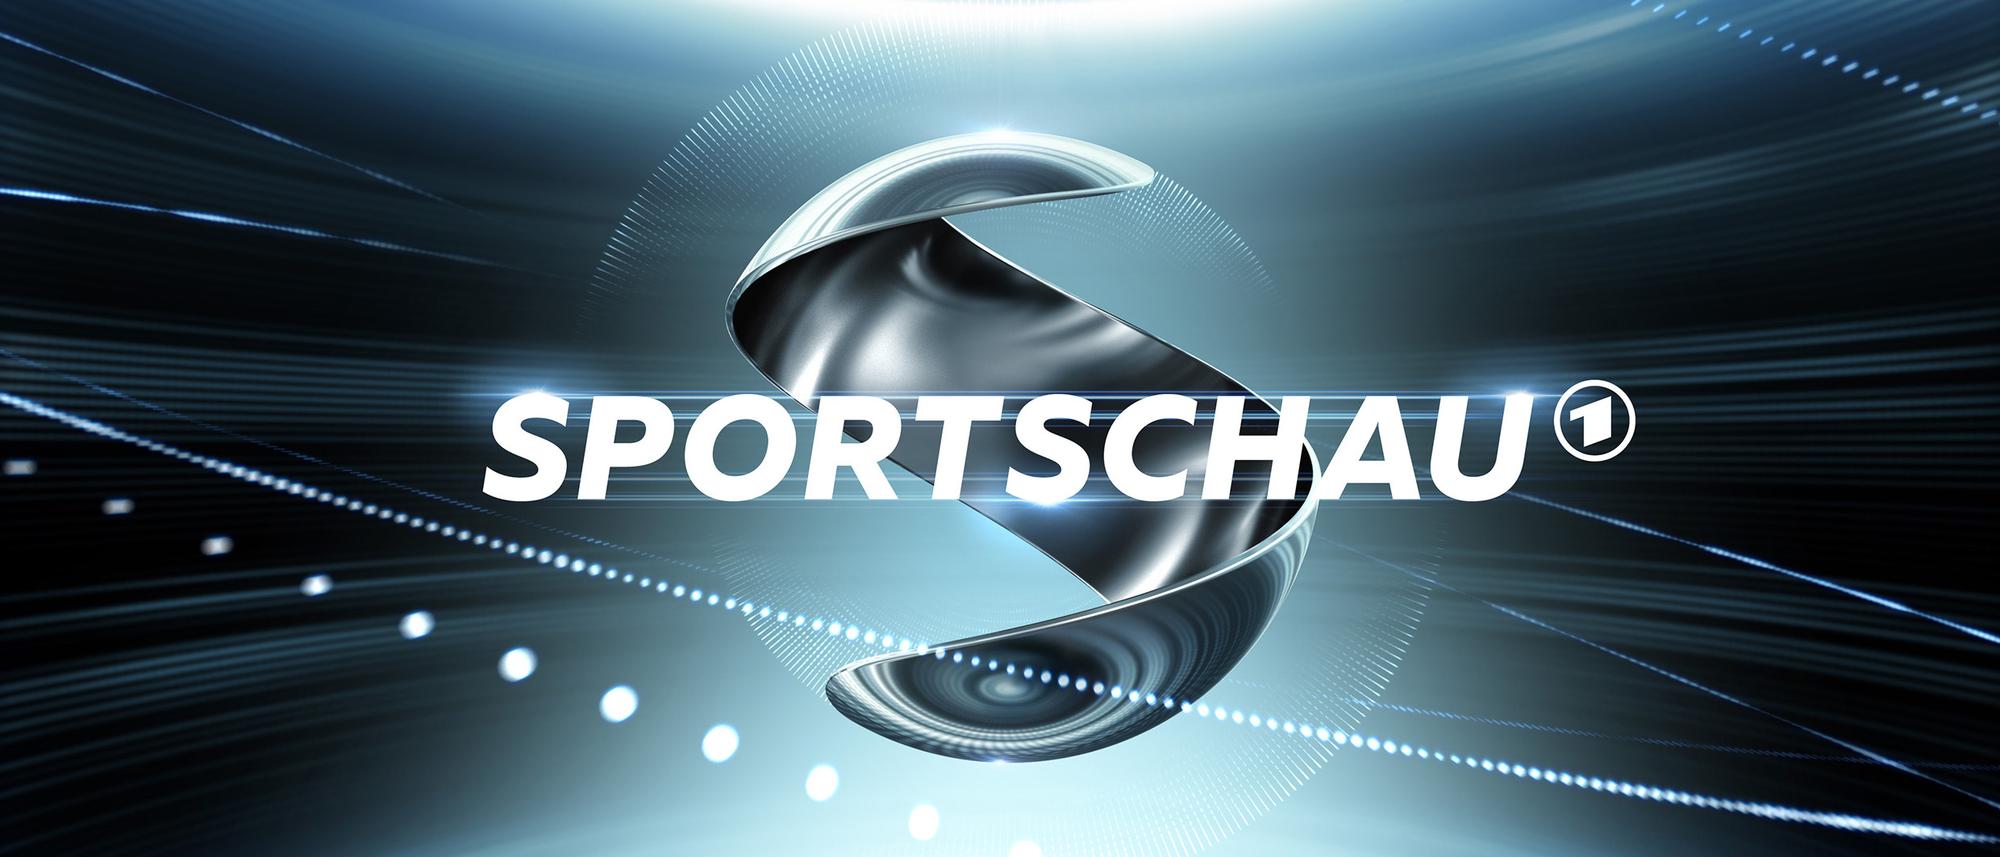 Bundesliga im Fernsehen „Sportschau“ verliert, „Sportstudio“ gewinnt Zuschauer